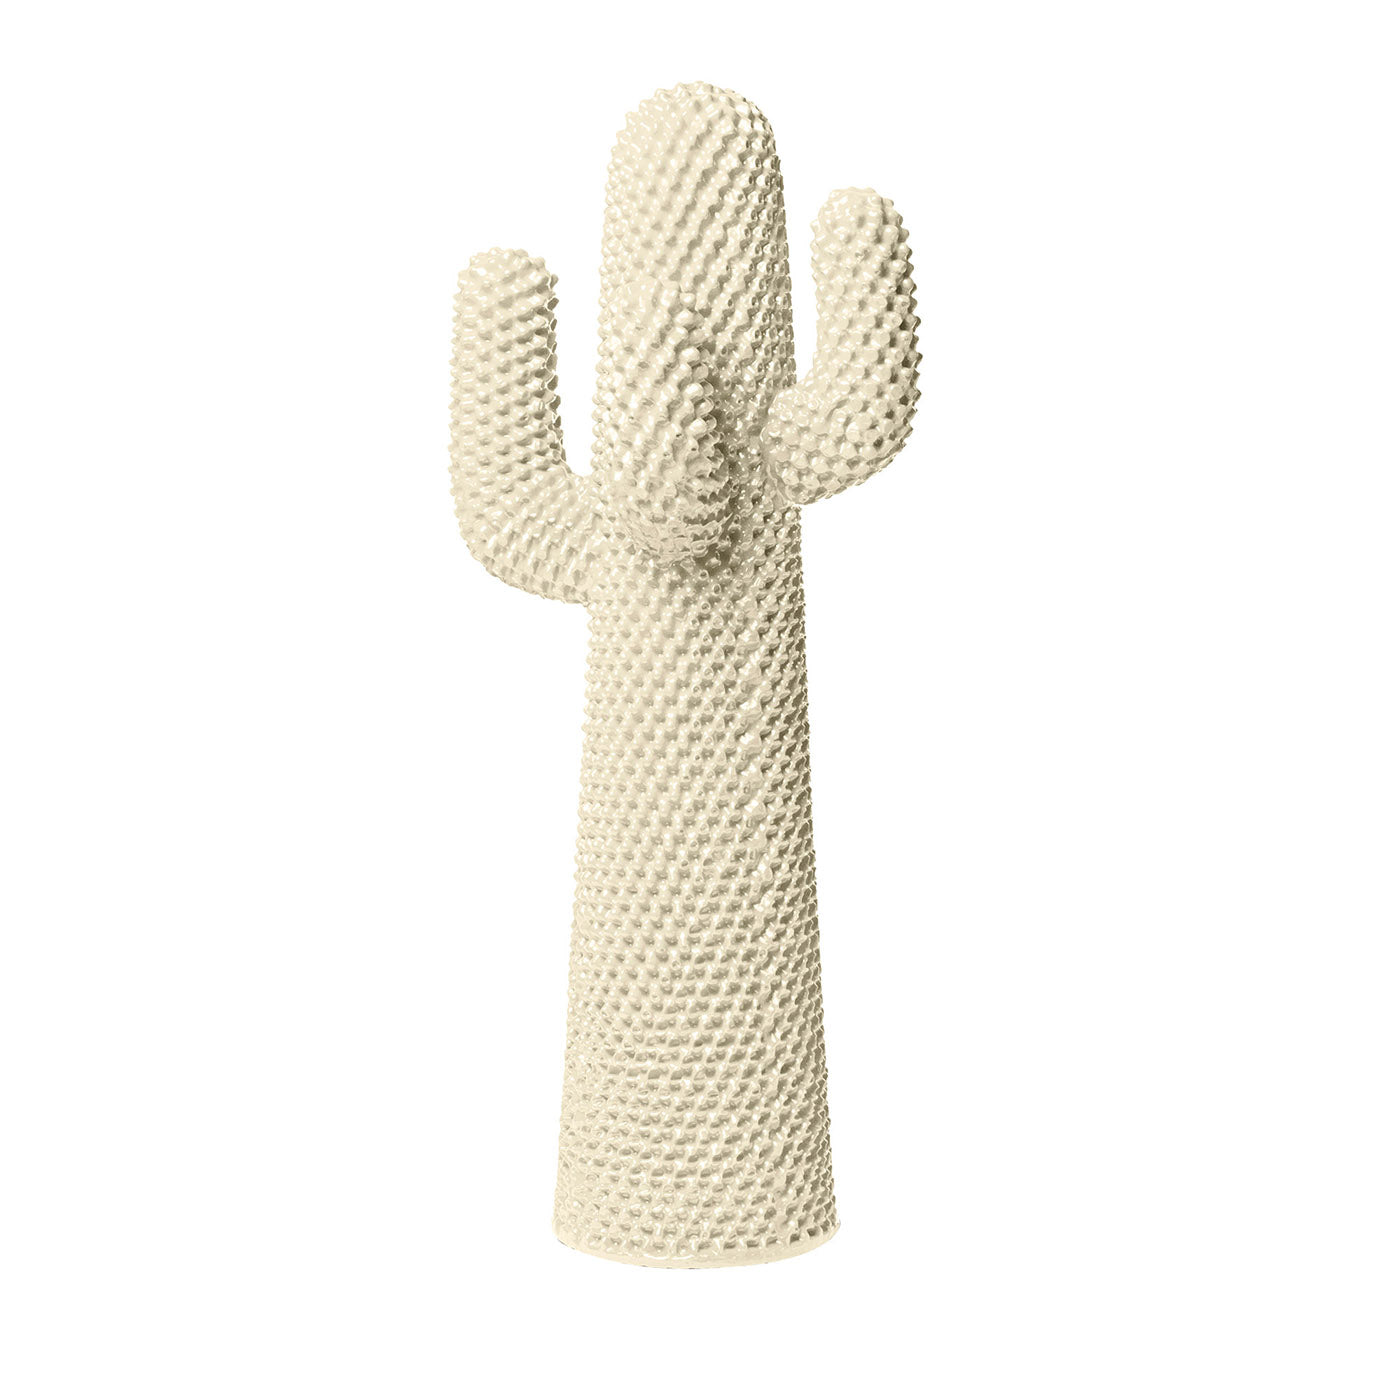 Autre porte-manteau en cactus blanc par Drocco/Mello